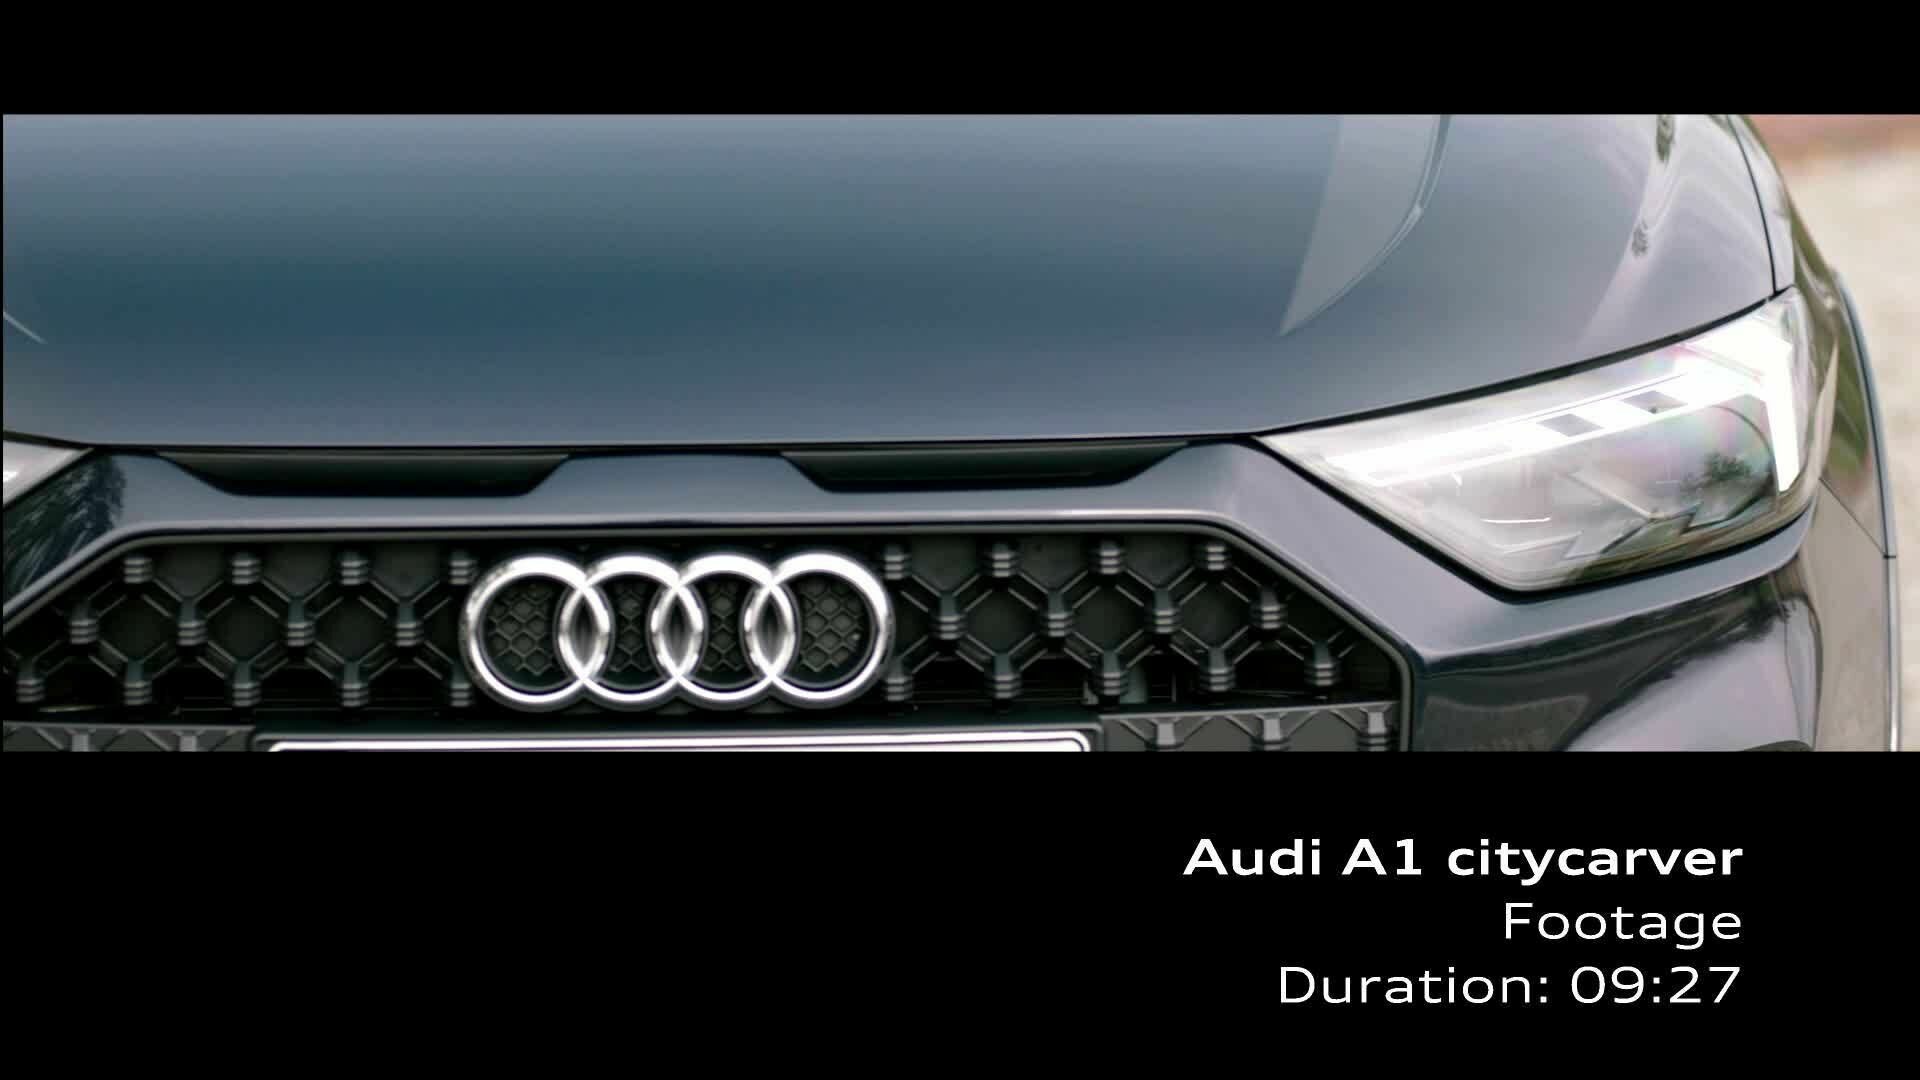 Audi A1 citycarver (Footage) blue